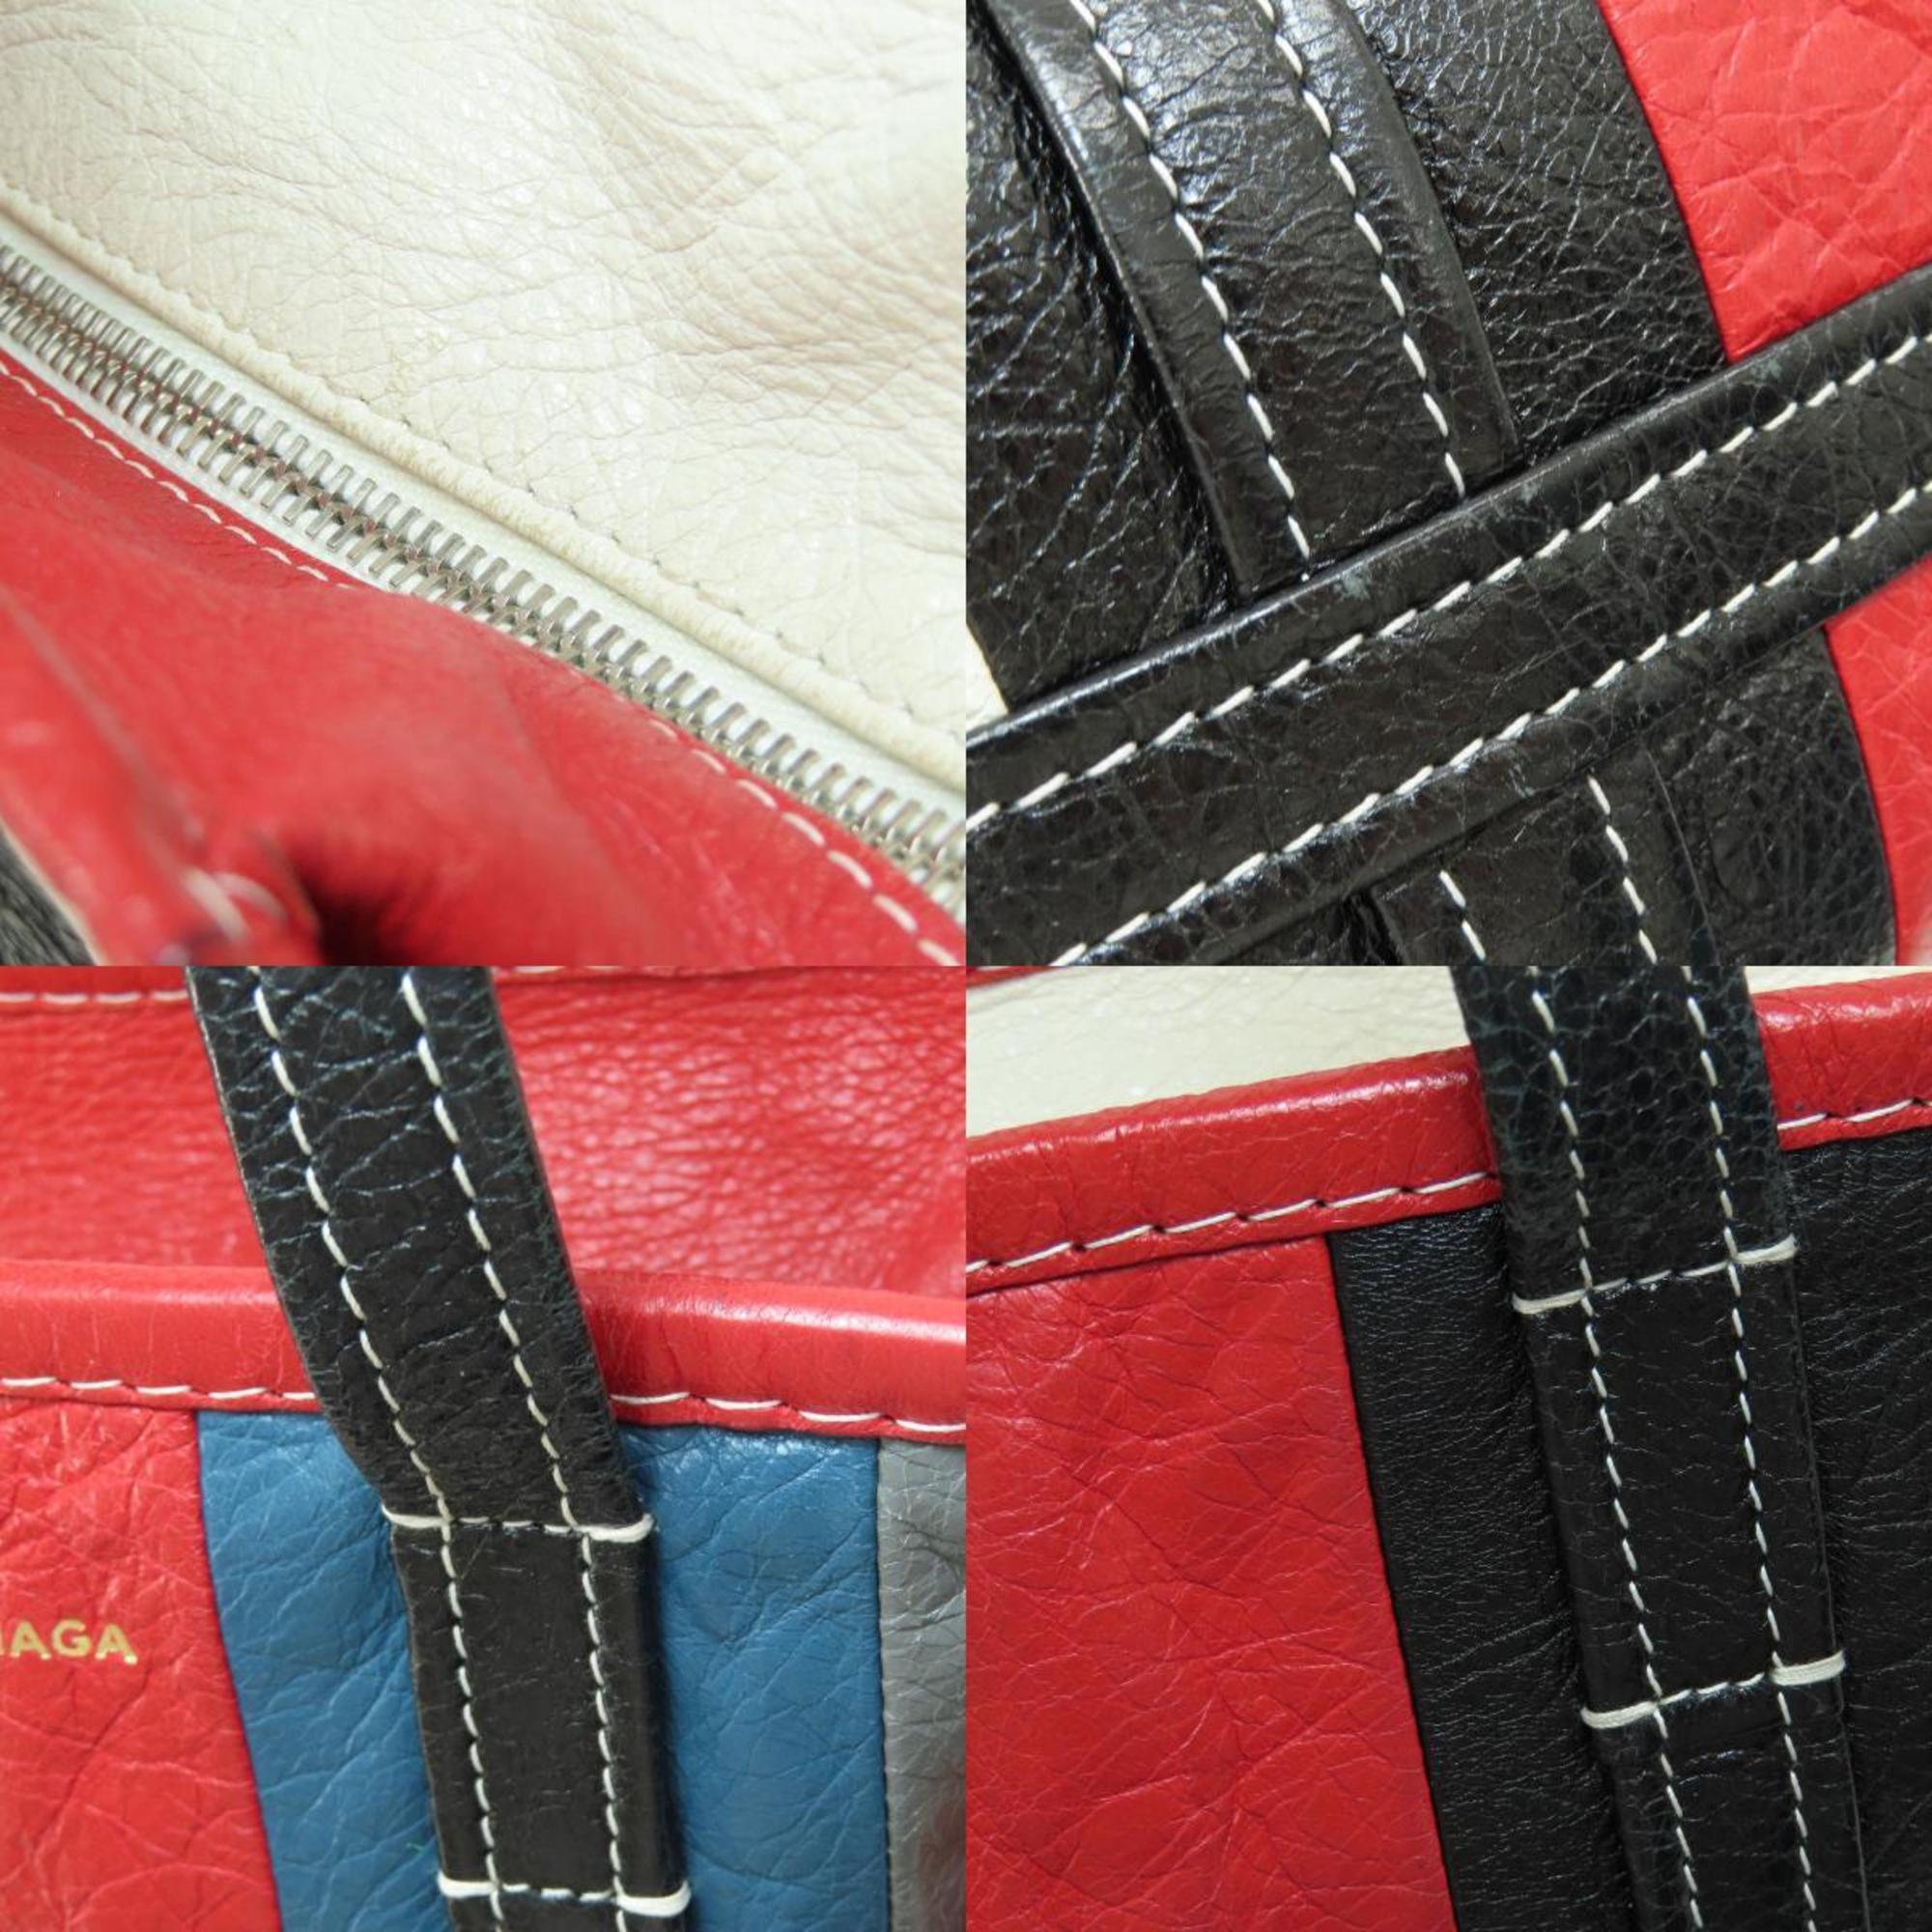 Balenciaga 452458 Bazar Stripe Handbag Leather Women's